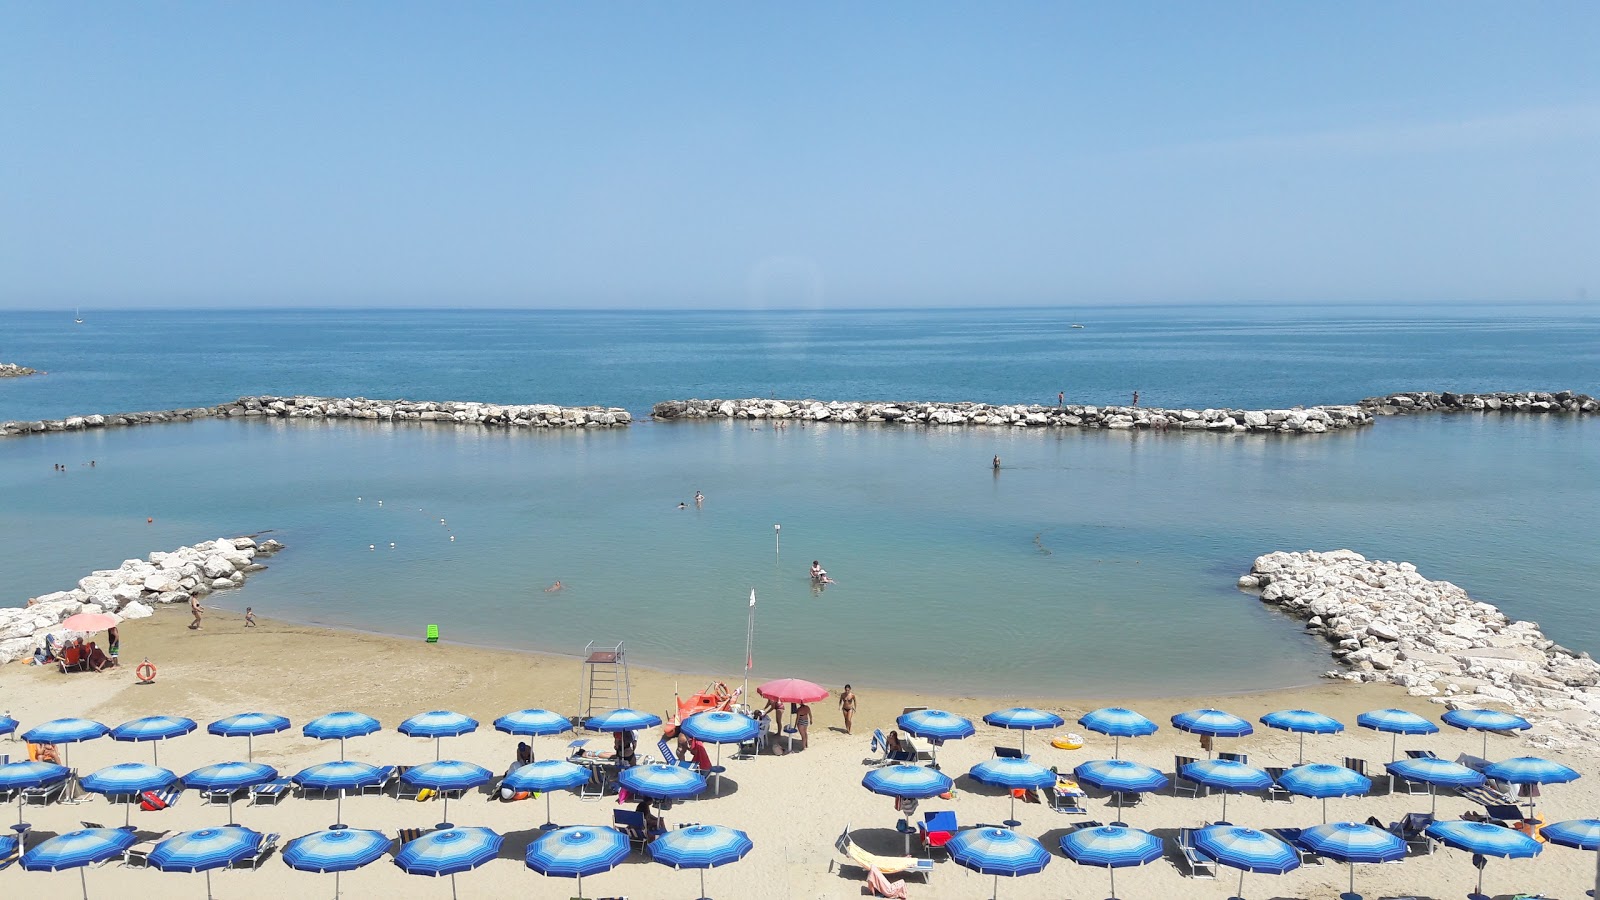 Marina di Montenero'in fotoğrafı i̇nce kahverengi kum yüzey ile